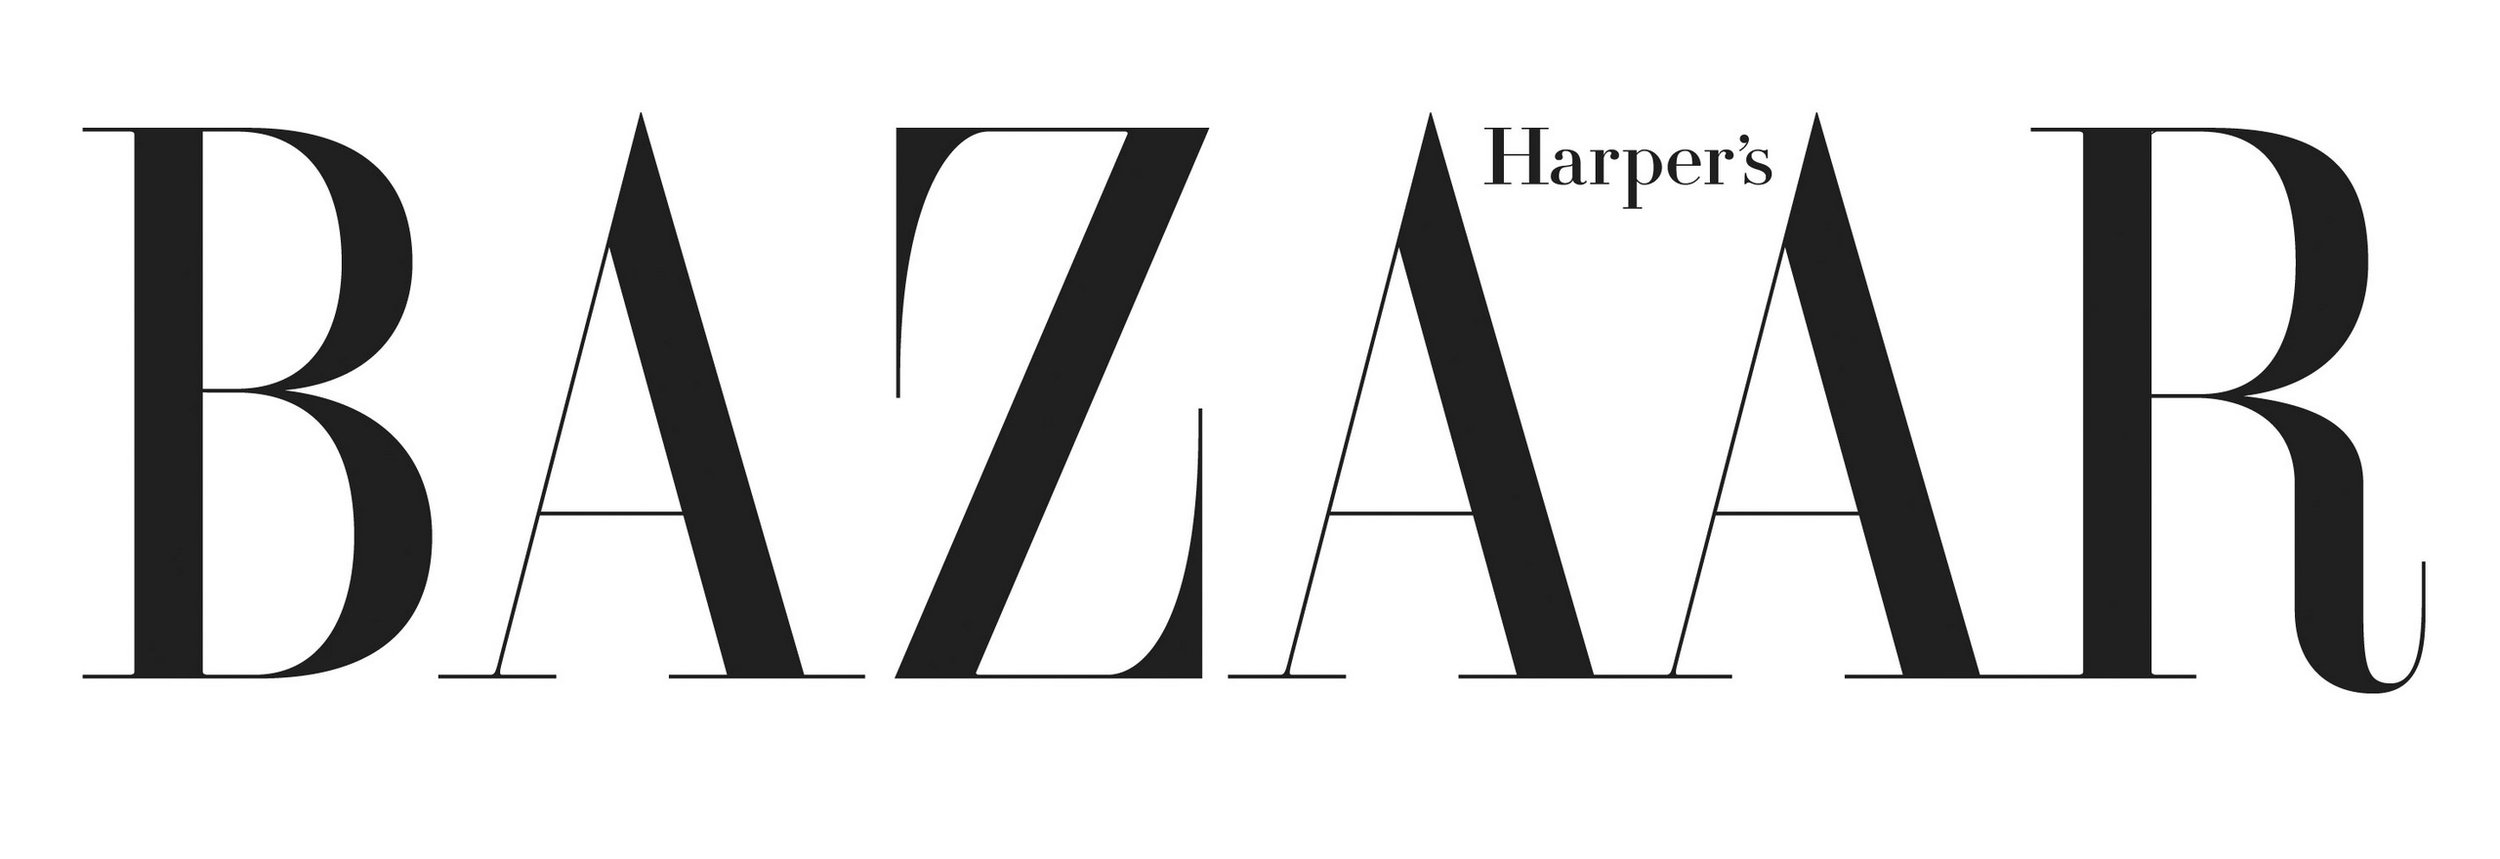 Harpers Bazaar.jpg